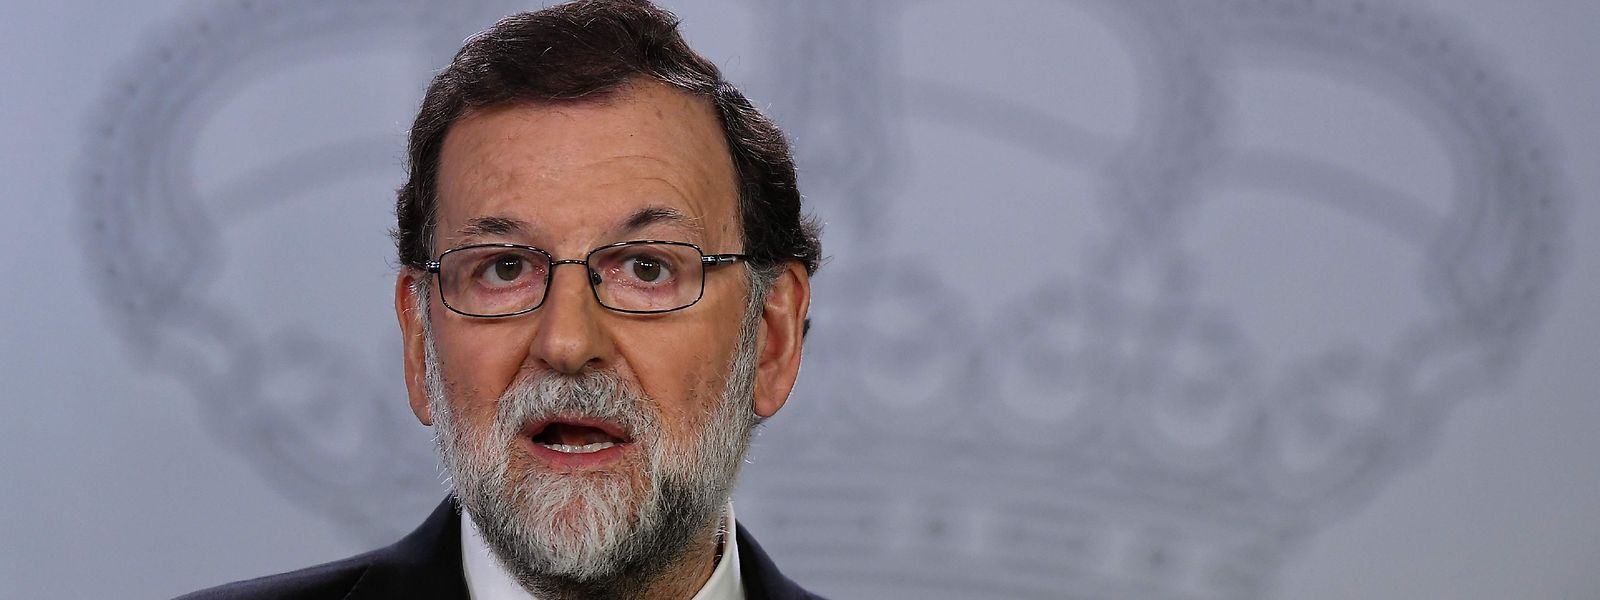 Der spanische Regierungschef Rajoy erhöht den Druck auf Katalonien. 